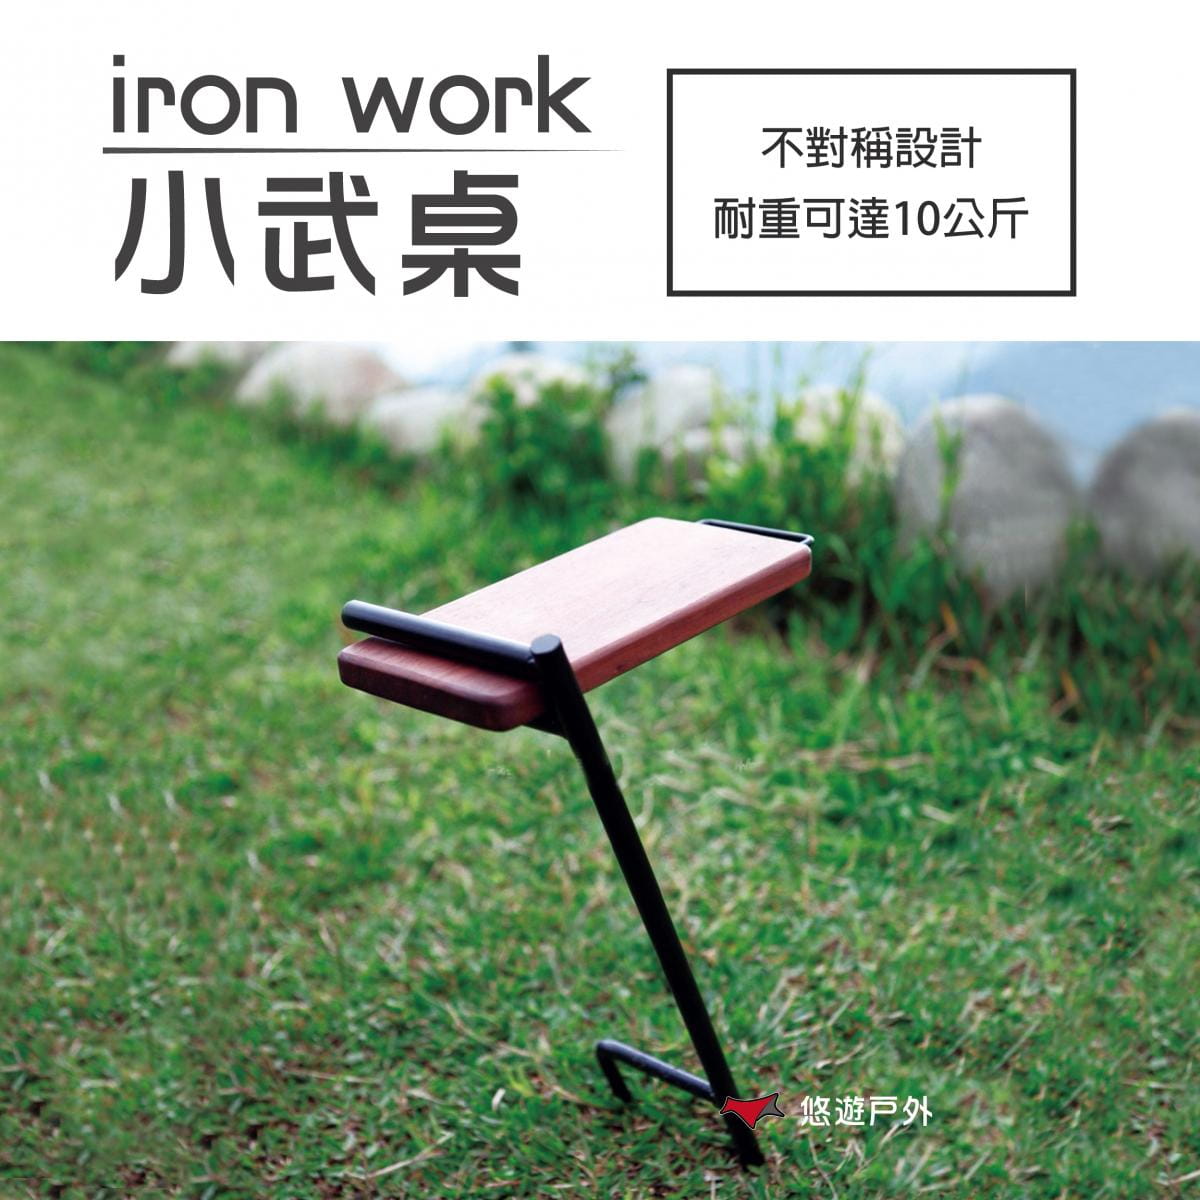 【鉄Iron work】小武桌 (悠遊戶外) 0